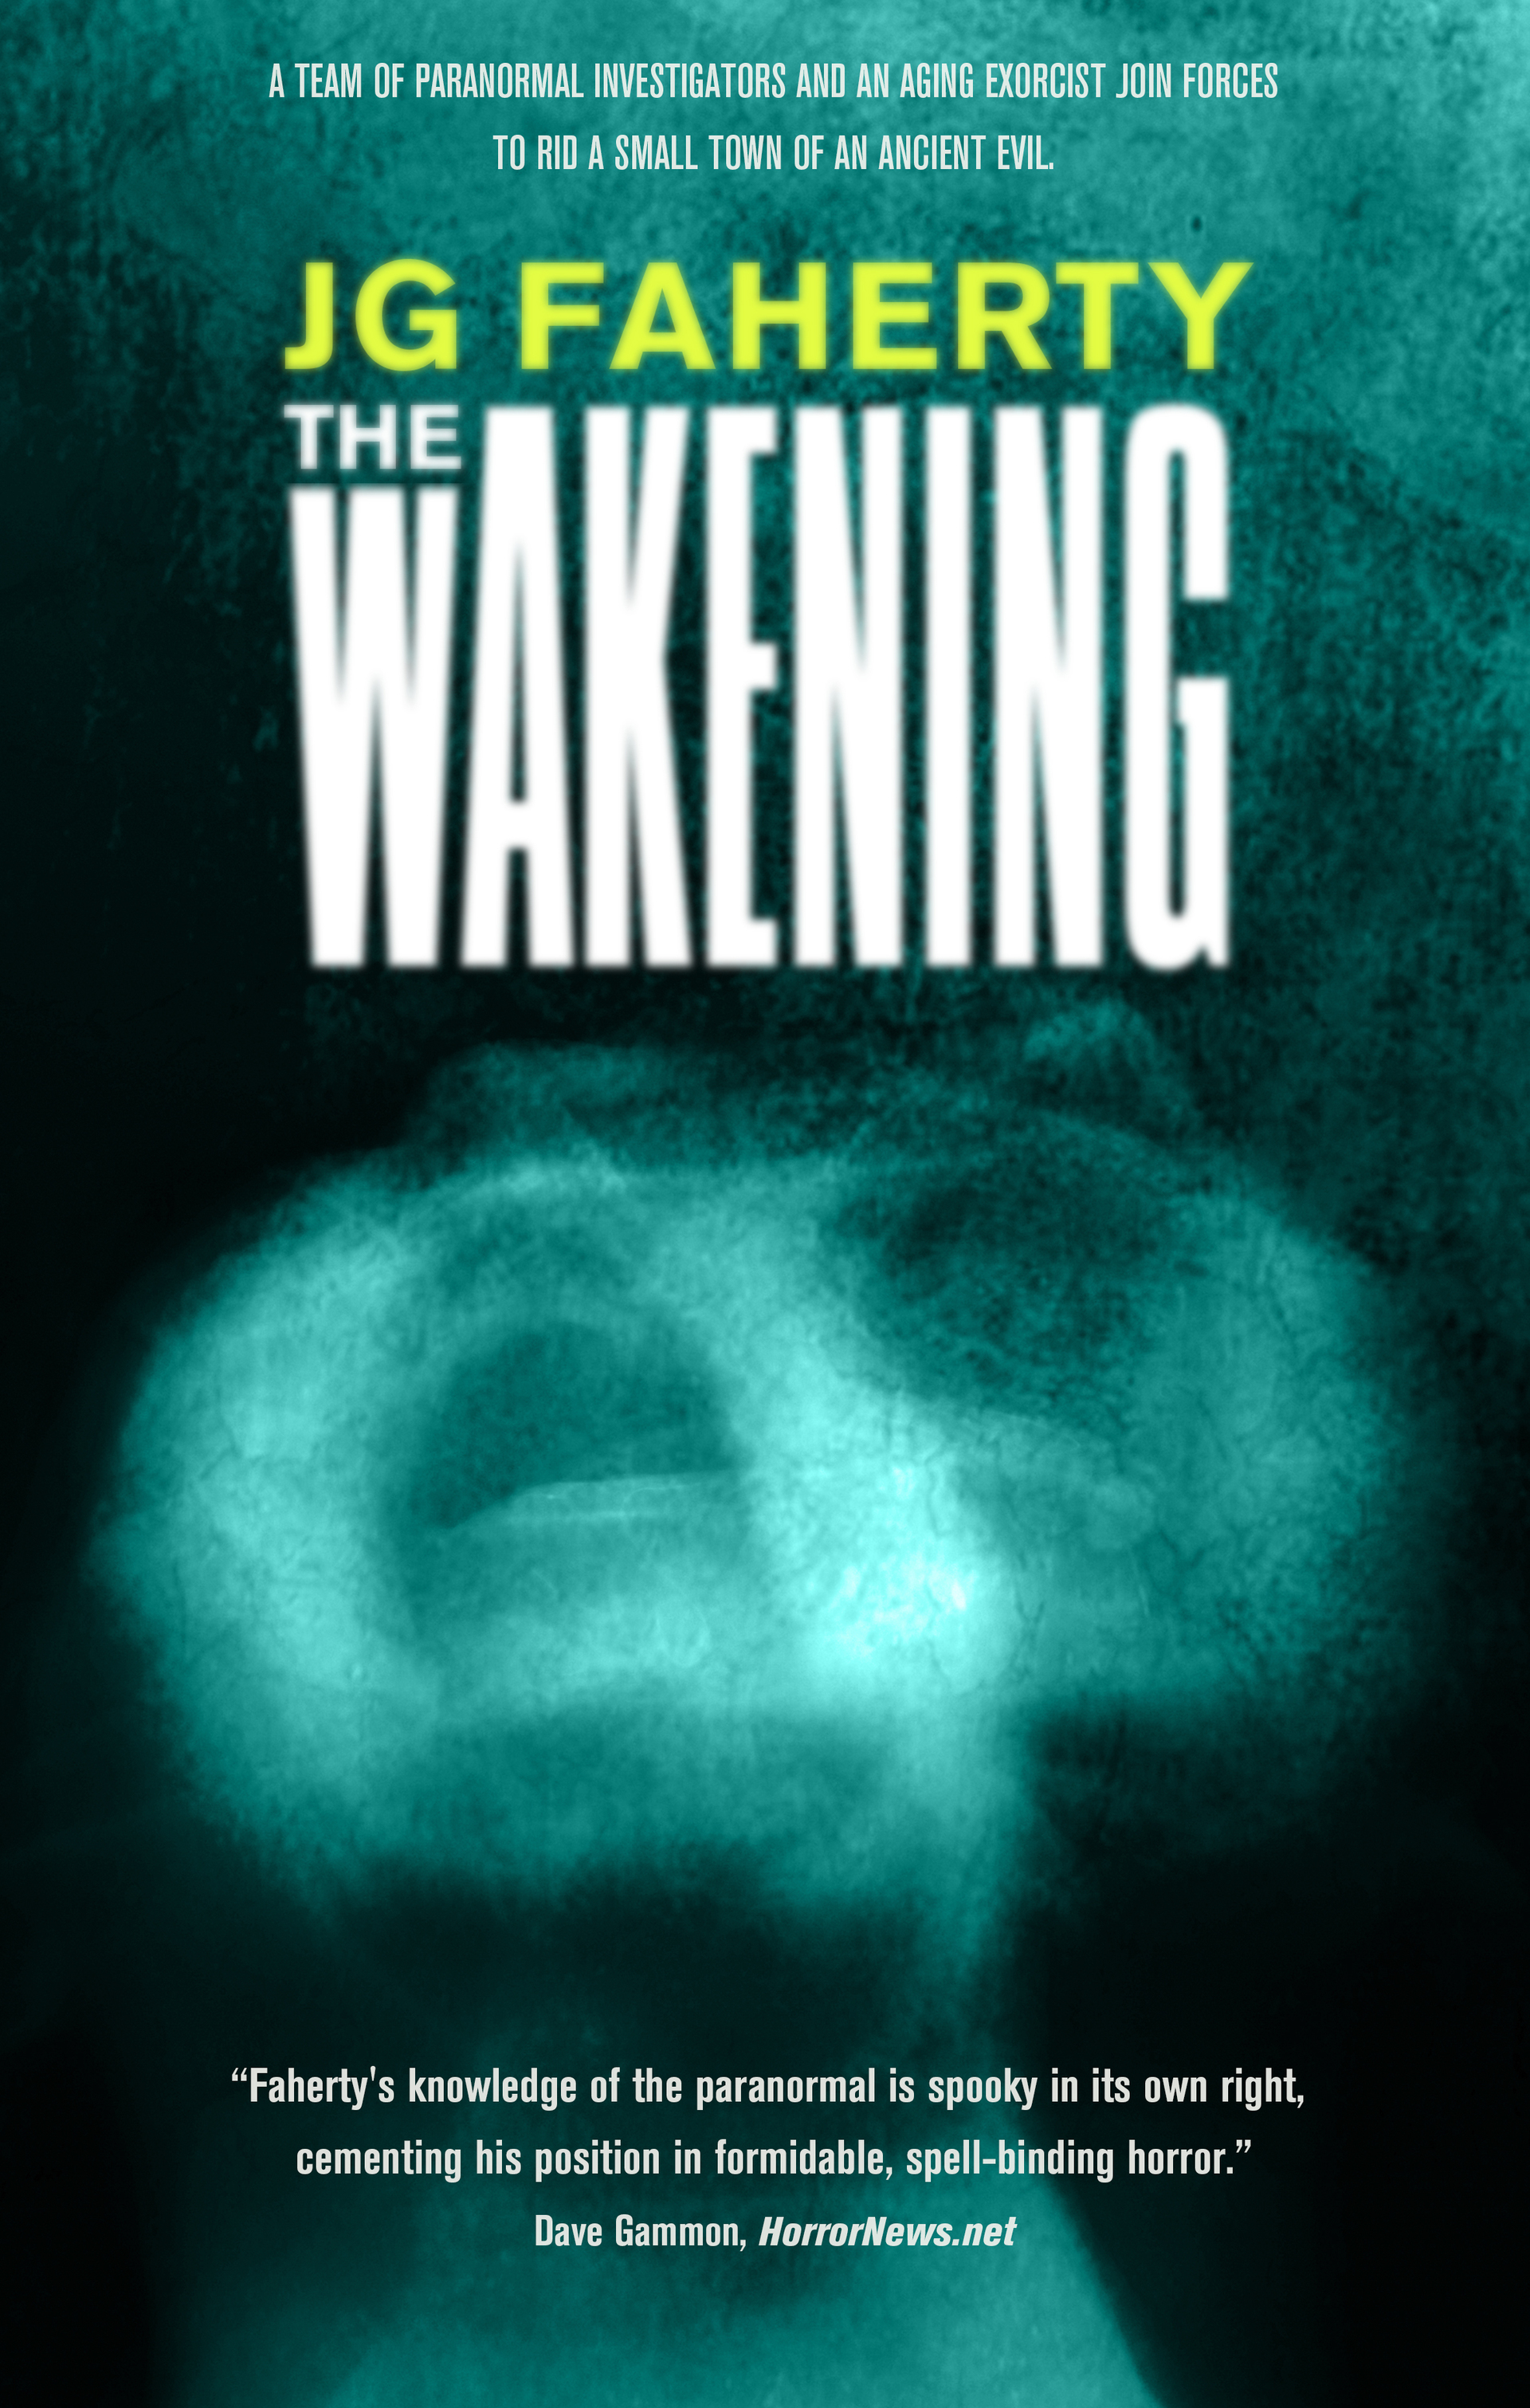 The Wakening